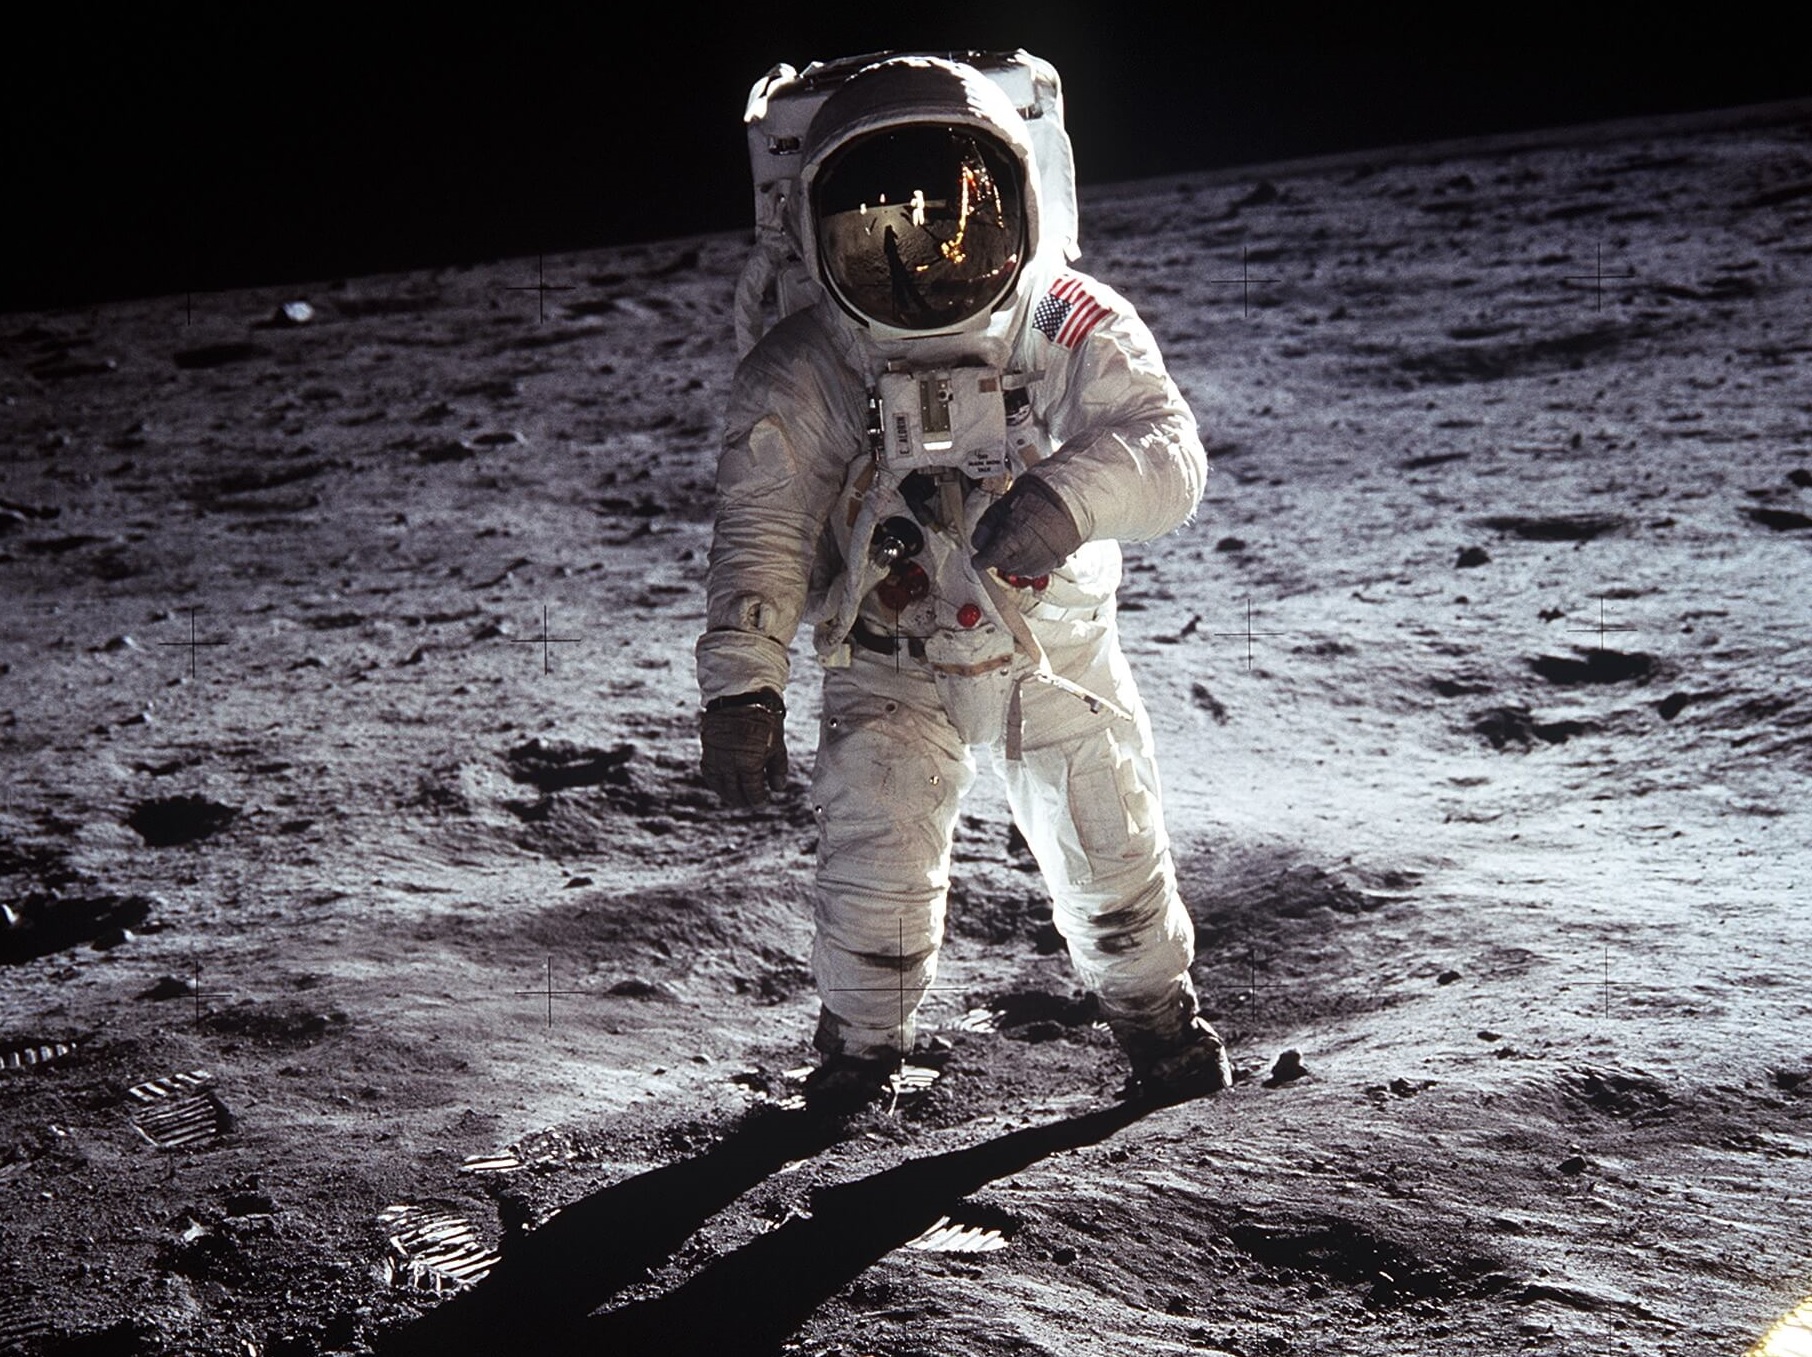 El astronauta Edwin E. Aldrin Jr. camina cerca del módulo lunar durante la actividad extravehicular de Apolo 11, el 20 de julio de 1969 en la Luna. (Getty Images/archivo)